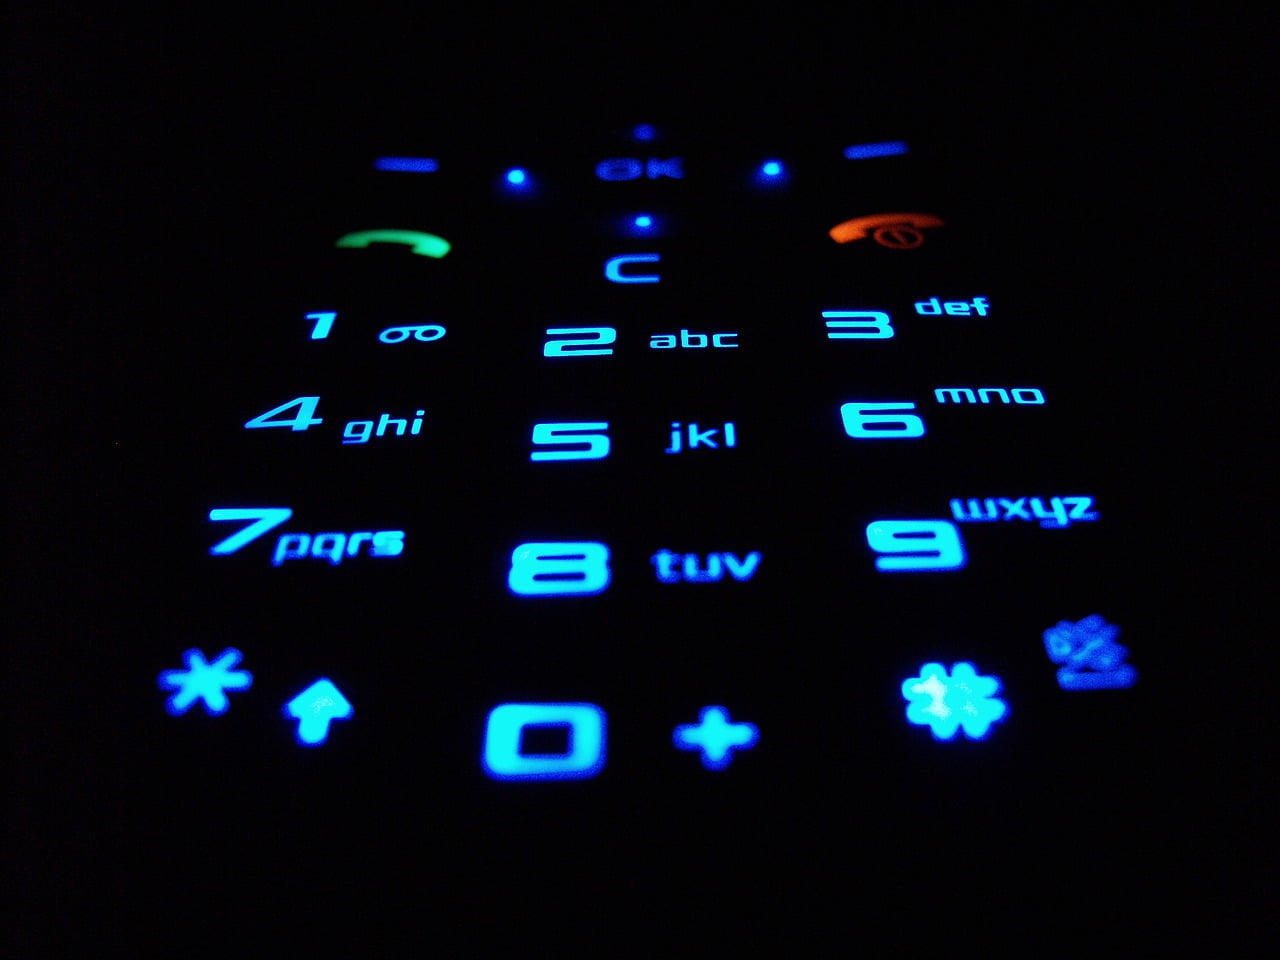 Handytastatur mit Ziffern, Tastatur ist blau beleuchtet